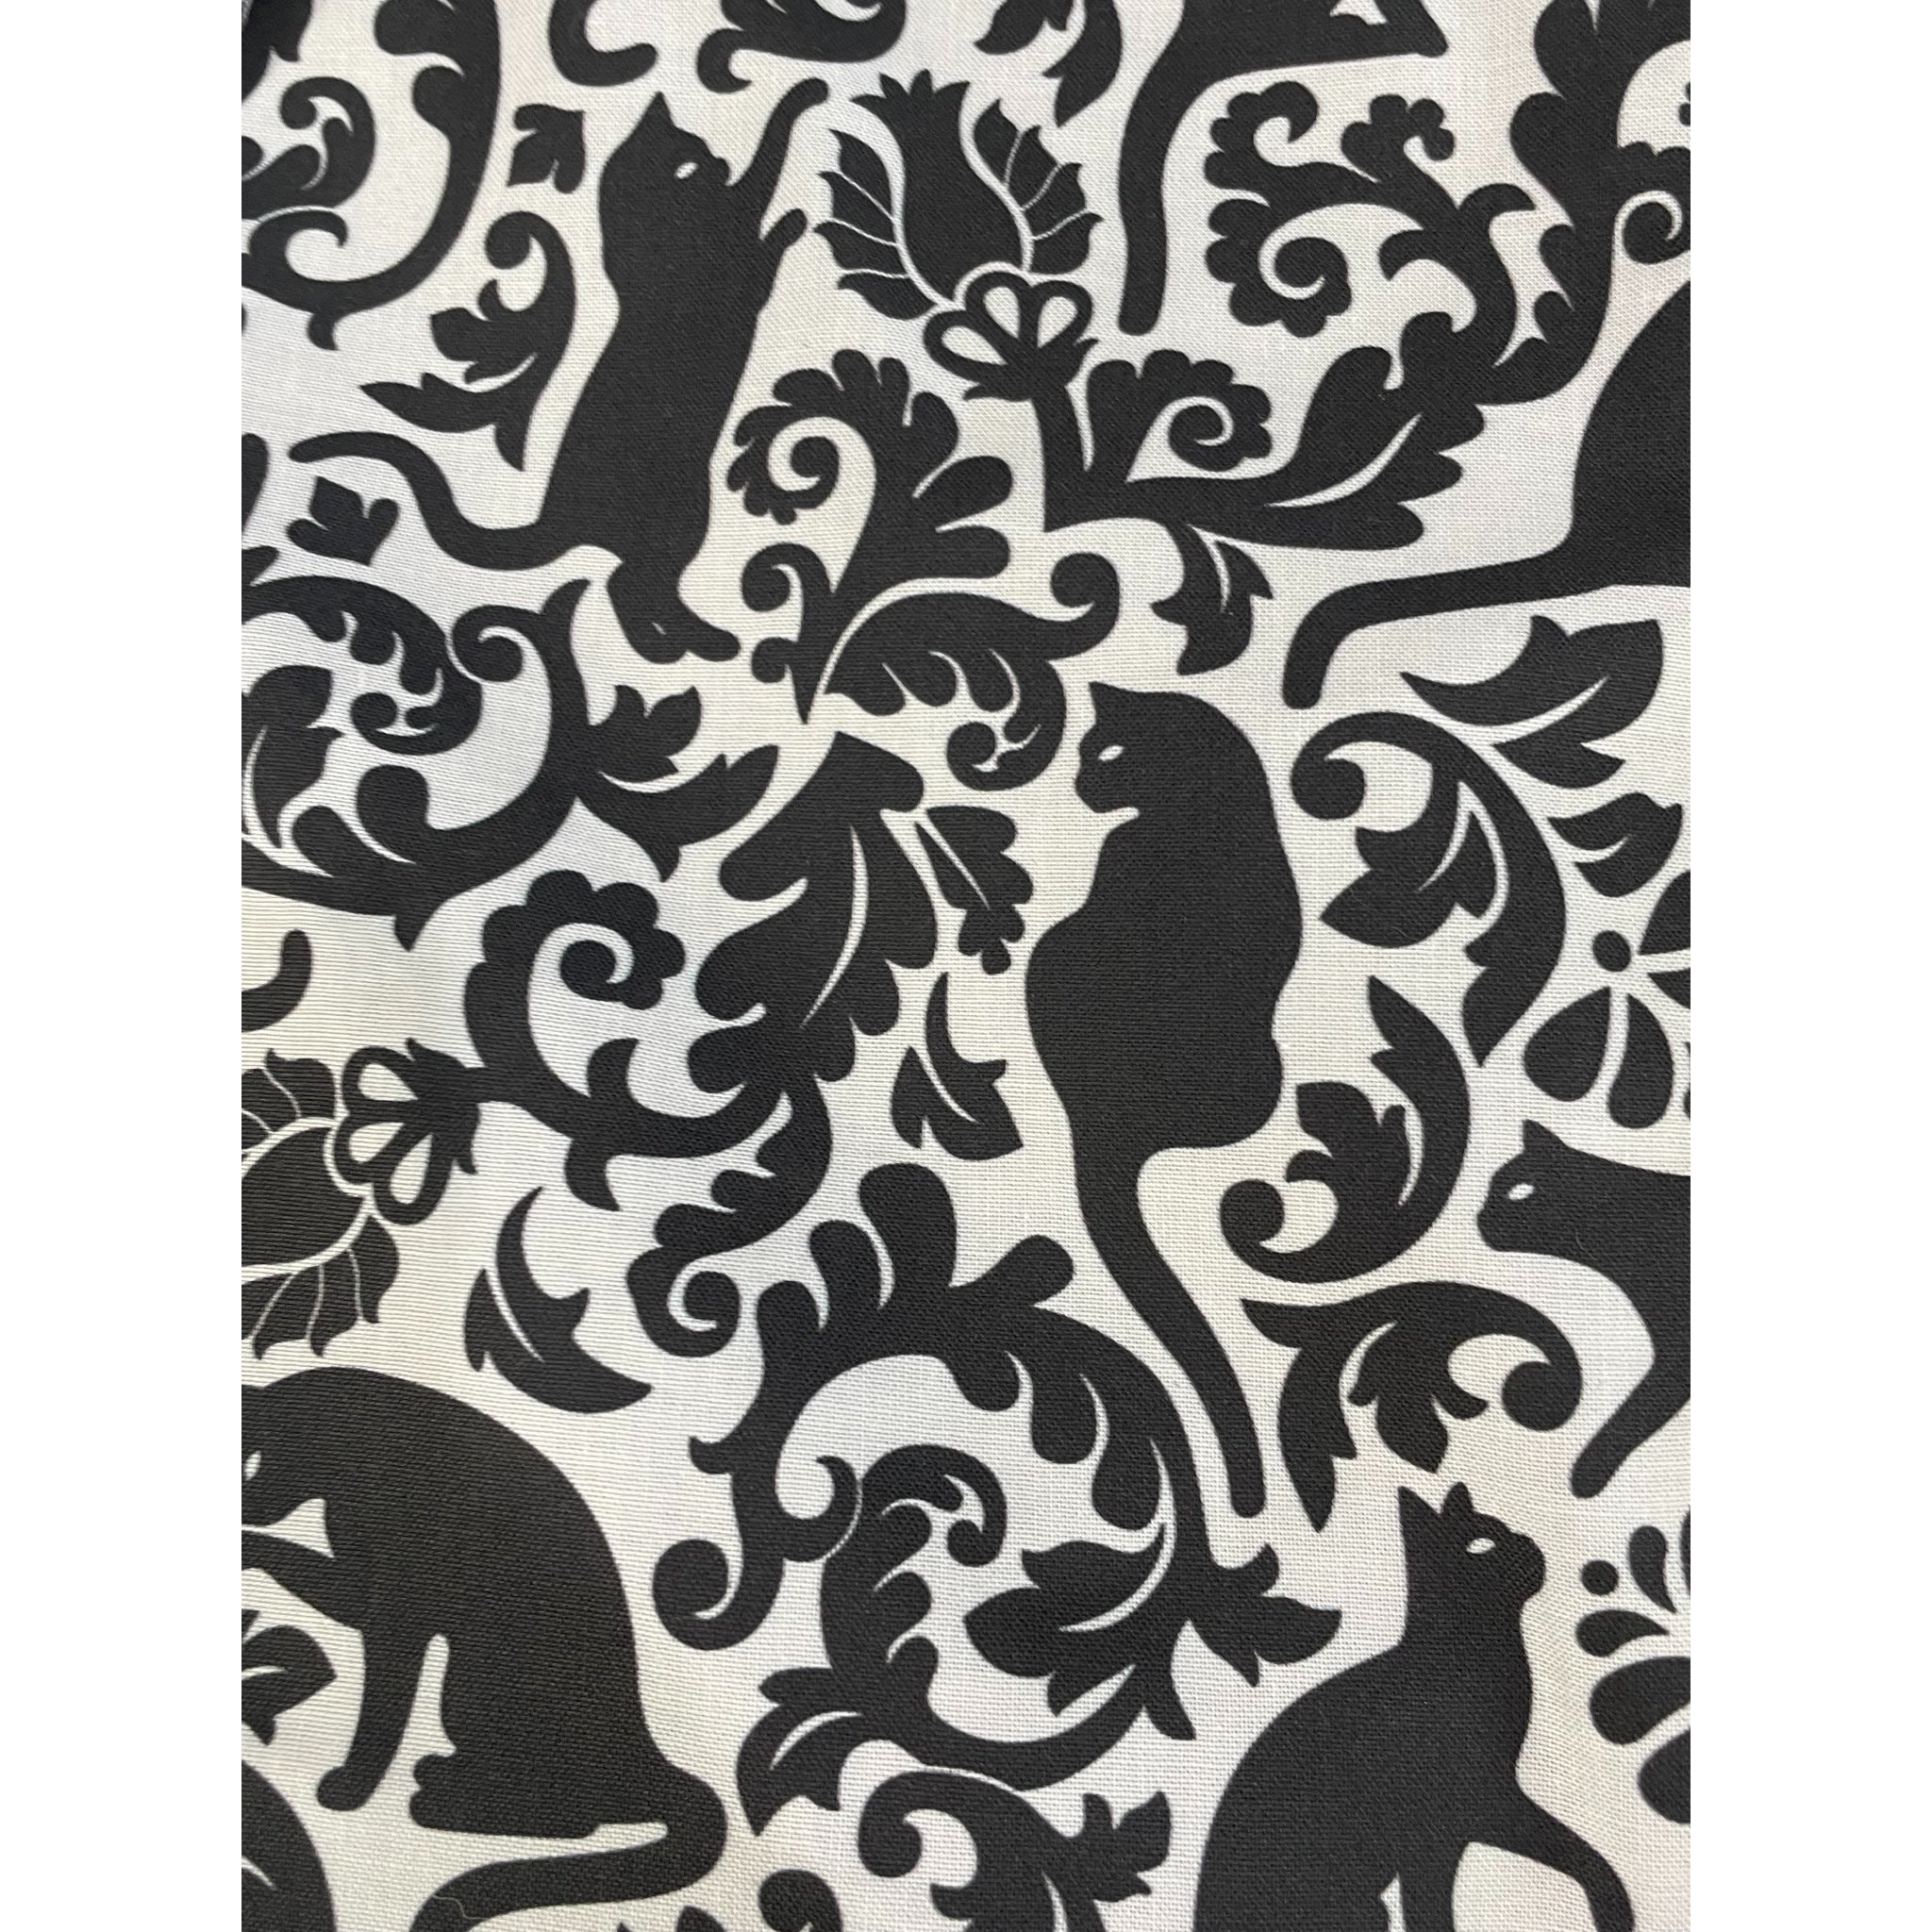 Tote Bag - Black Cat Print